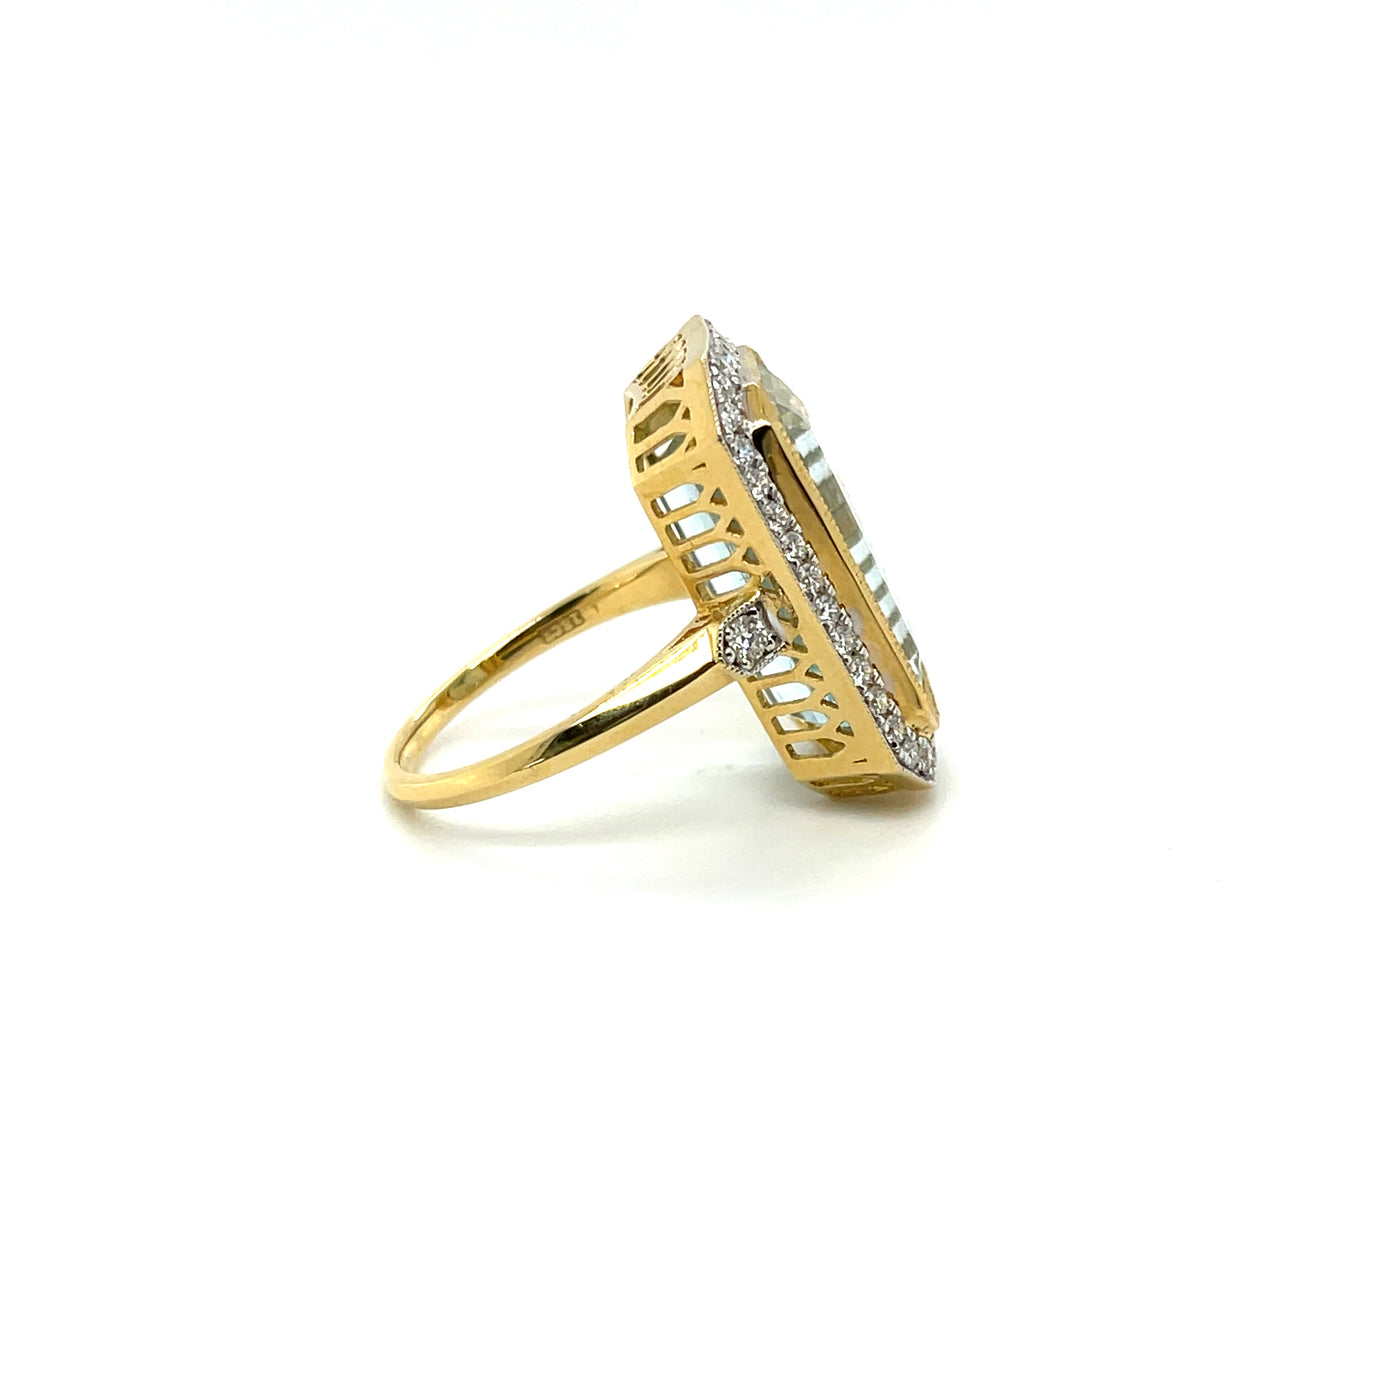 18ct yellow gold Aquamarine and Diamond ring